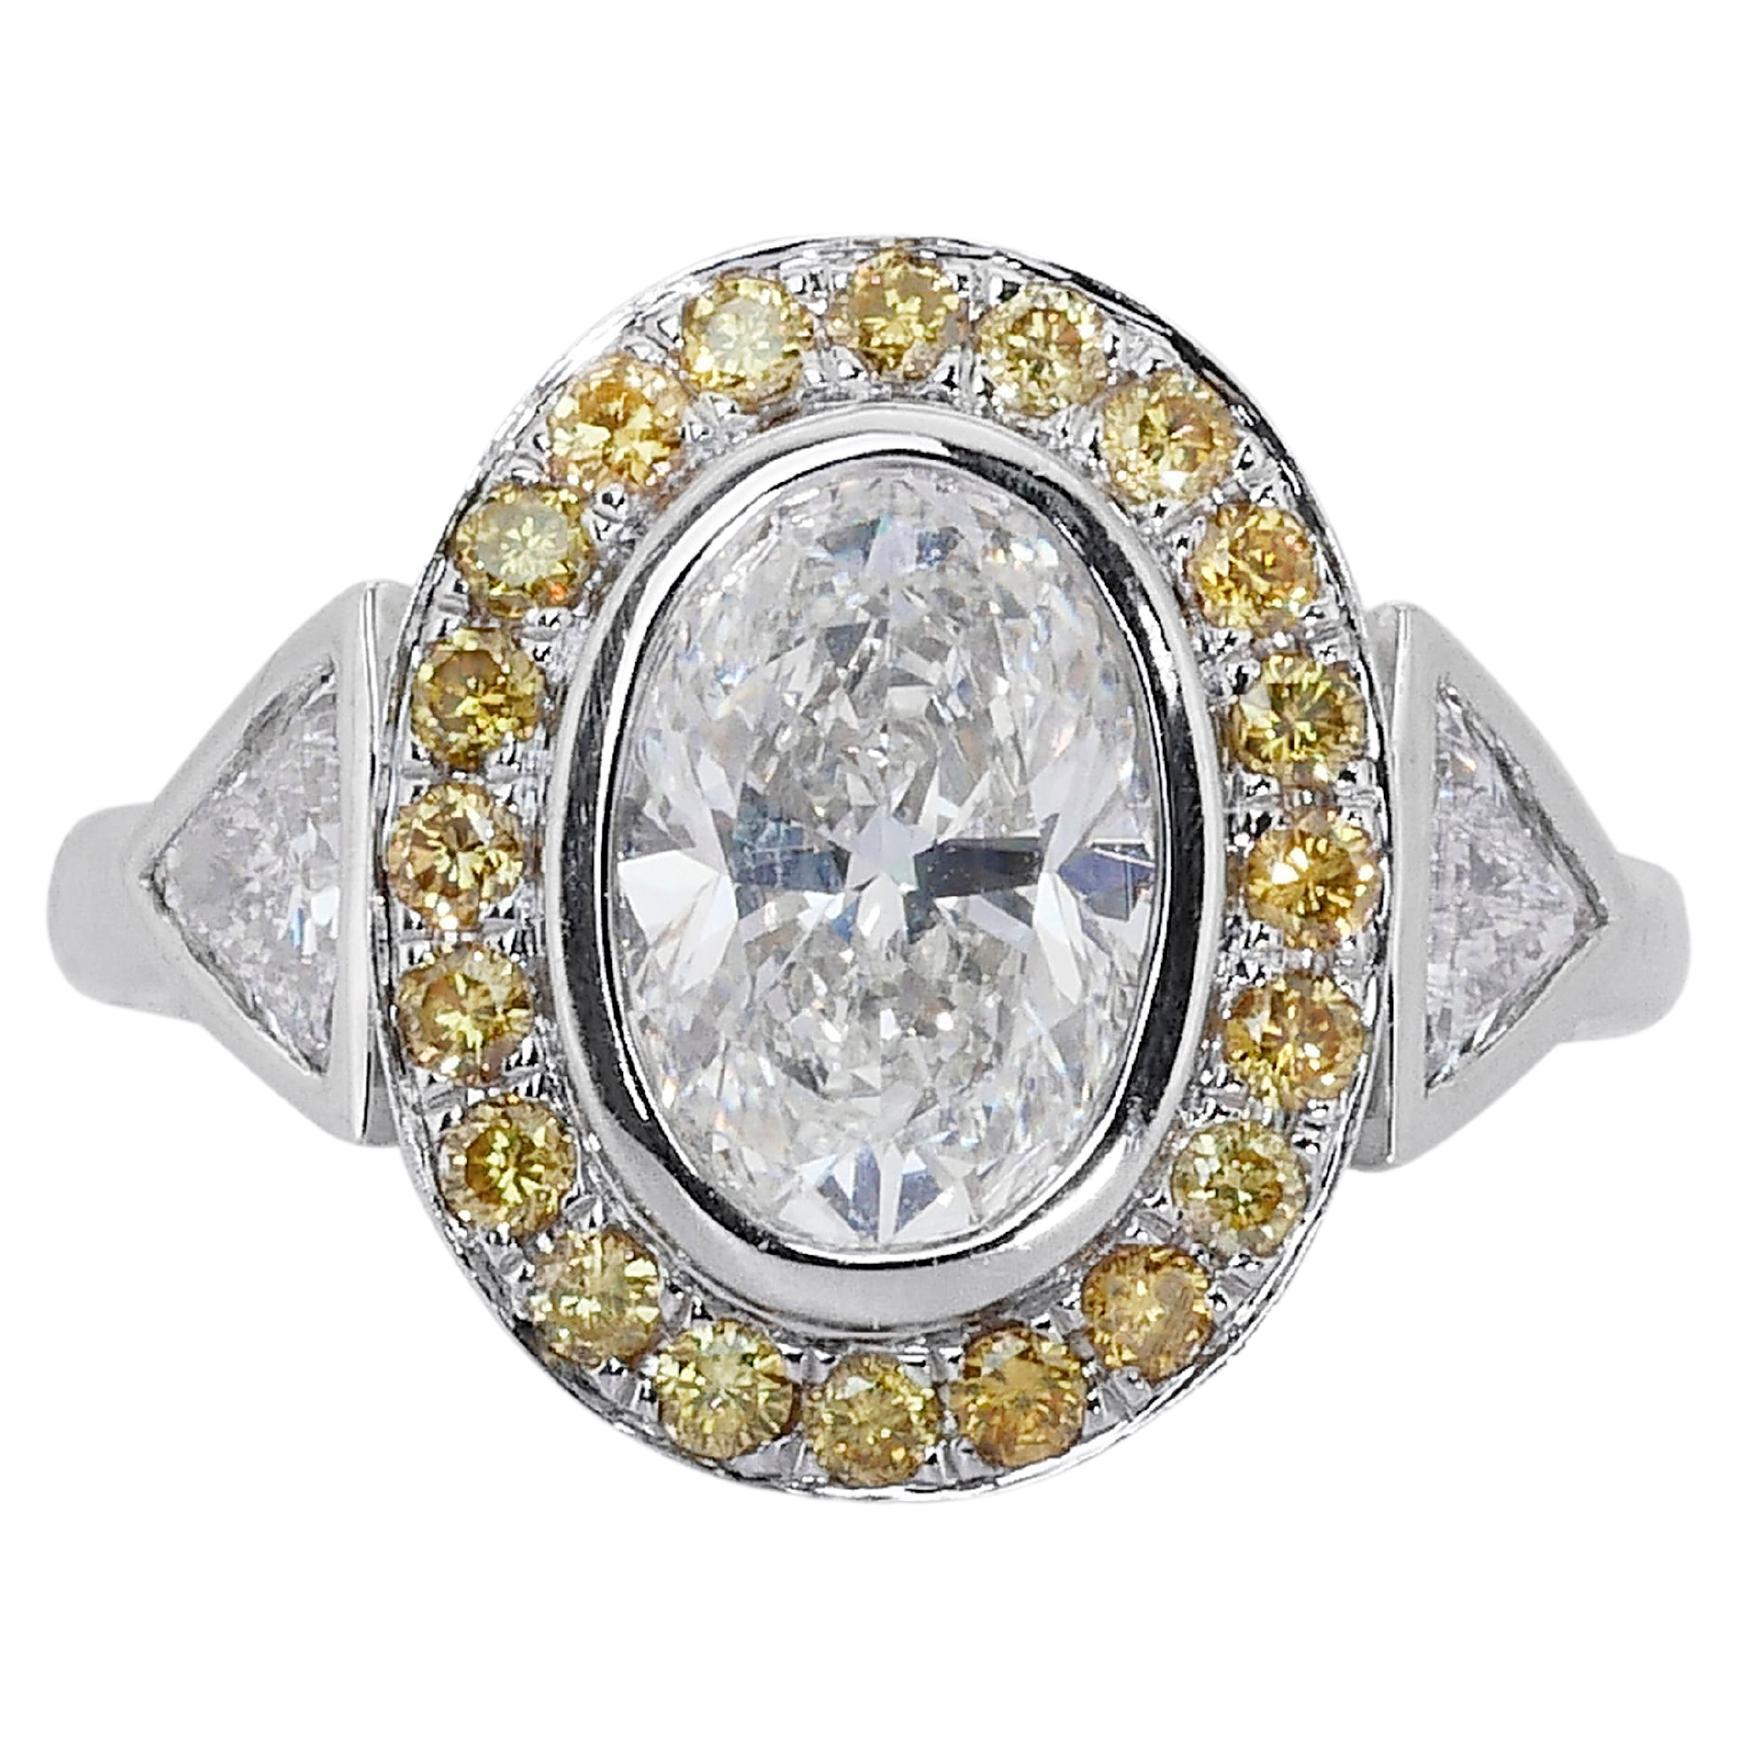 Ravishing 18k White Gold Oval Ring w/ 1.90ct Natural Diamonds IGI Certificate